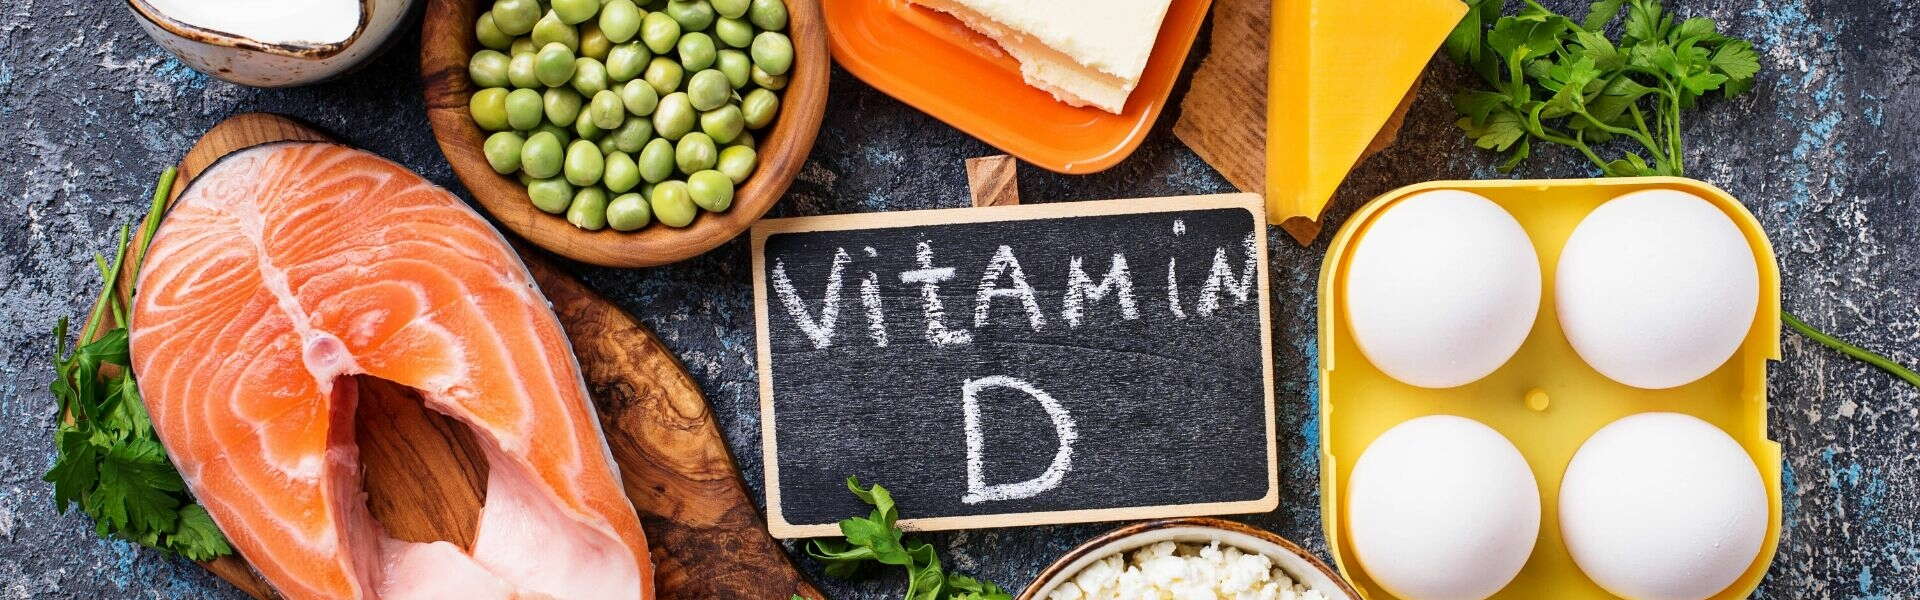 Vitamina D | Beneficios y los 5 alimentos más ricos